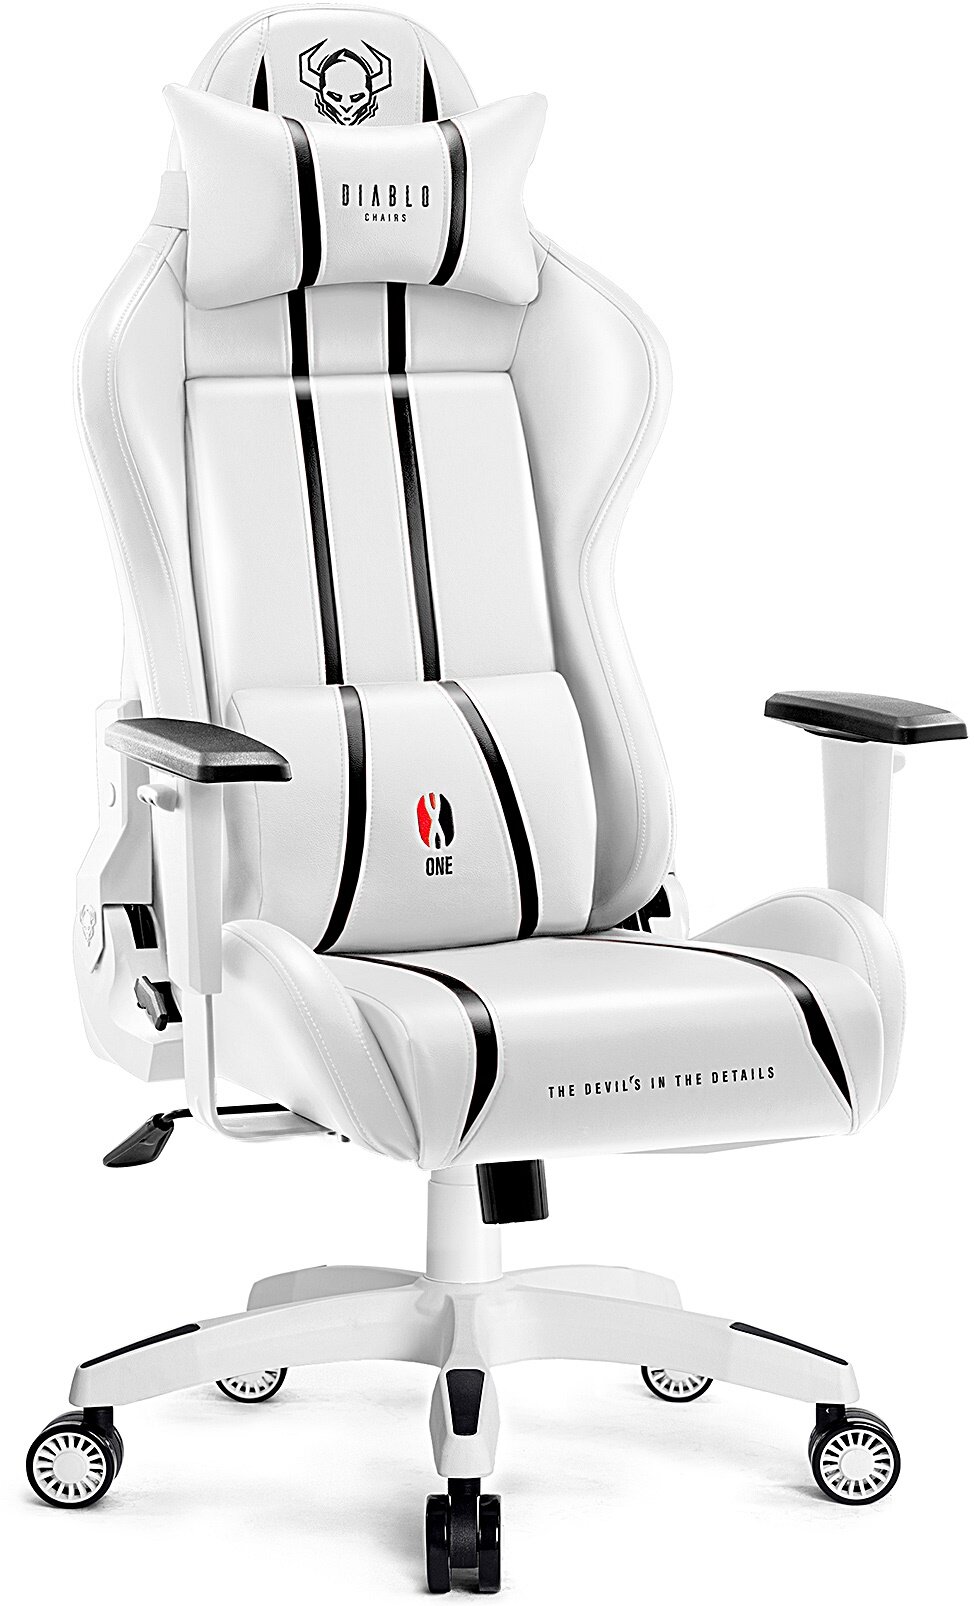 Fotel DIABLO X-ONE 2.0 King Size Biało-czarny - niskie ceny i opinie w  Media Expert